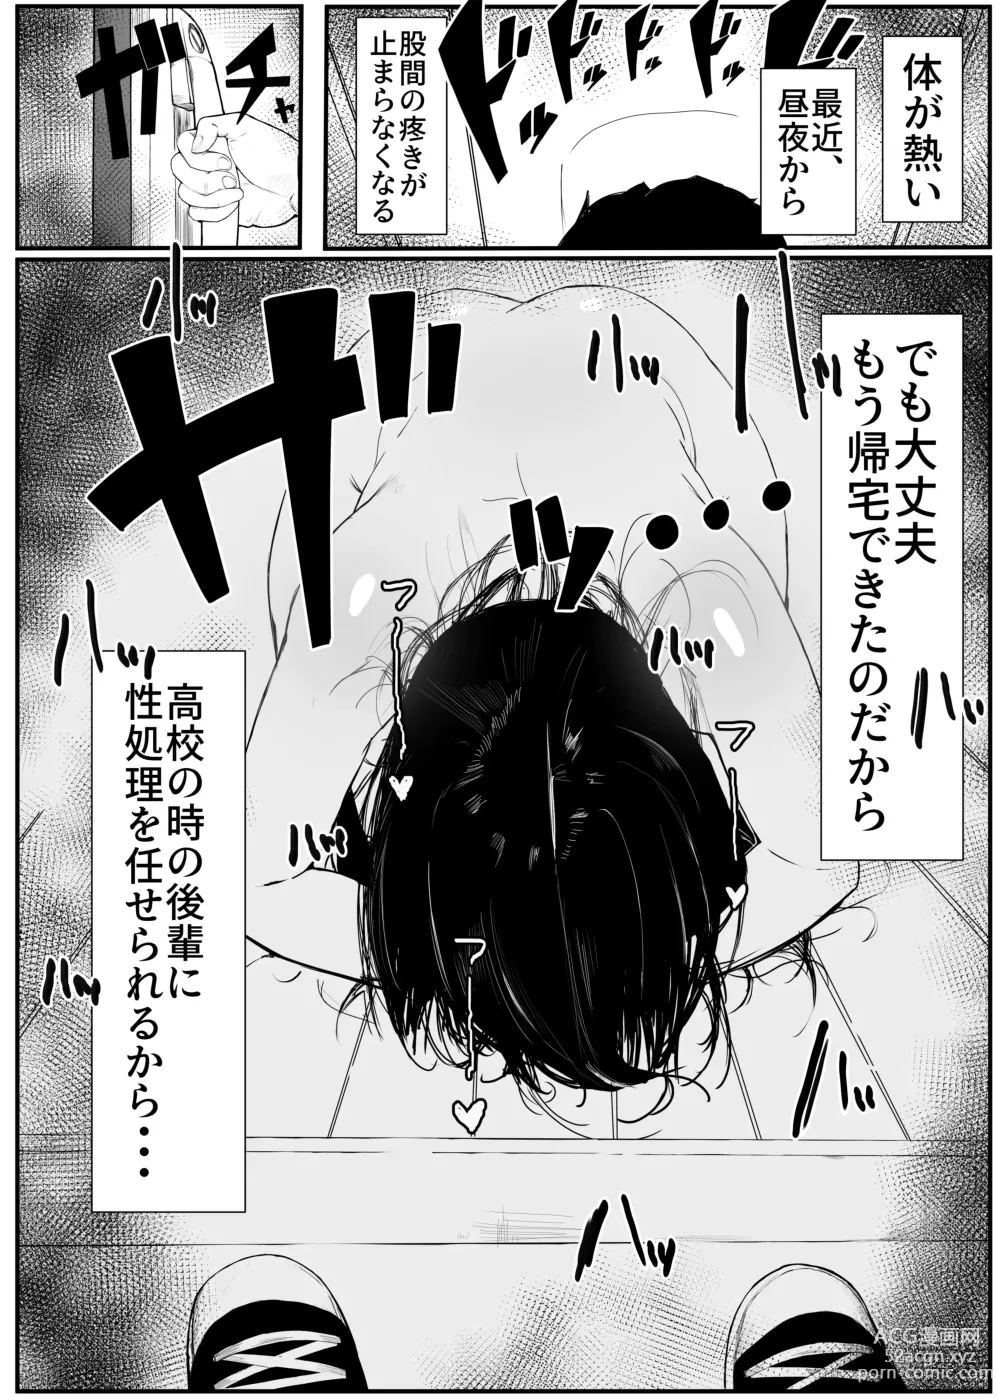 Page 4 of doujinshi Hikiyoseru chi tsunagi tomeru kusari